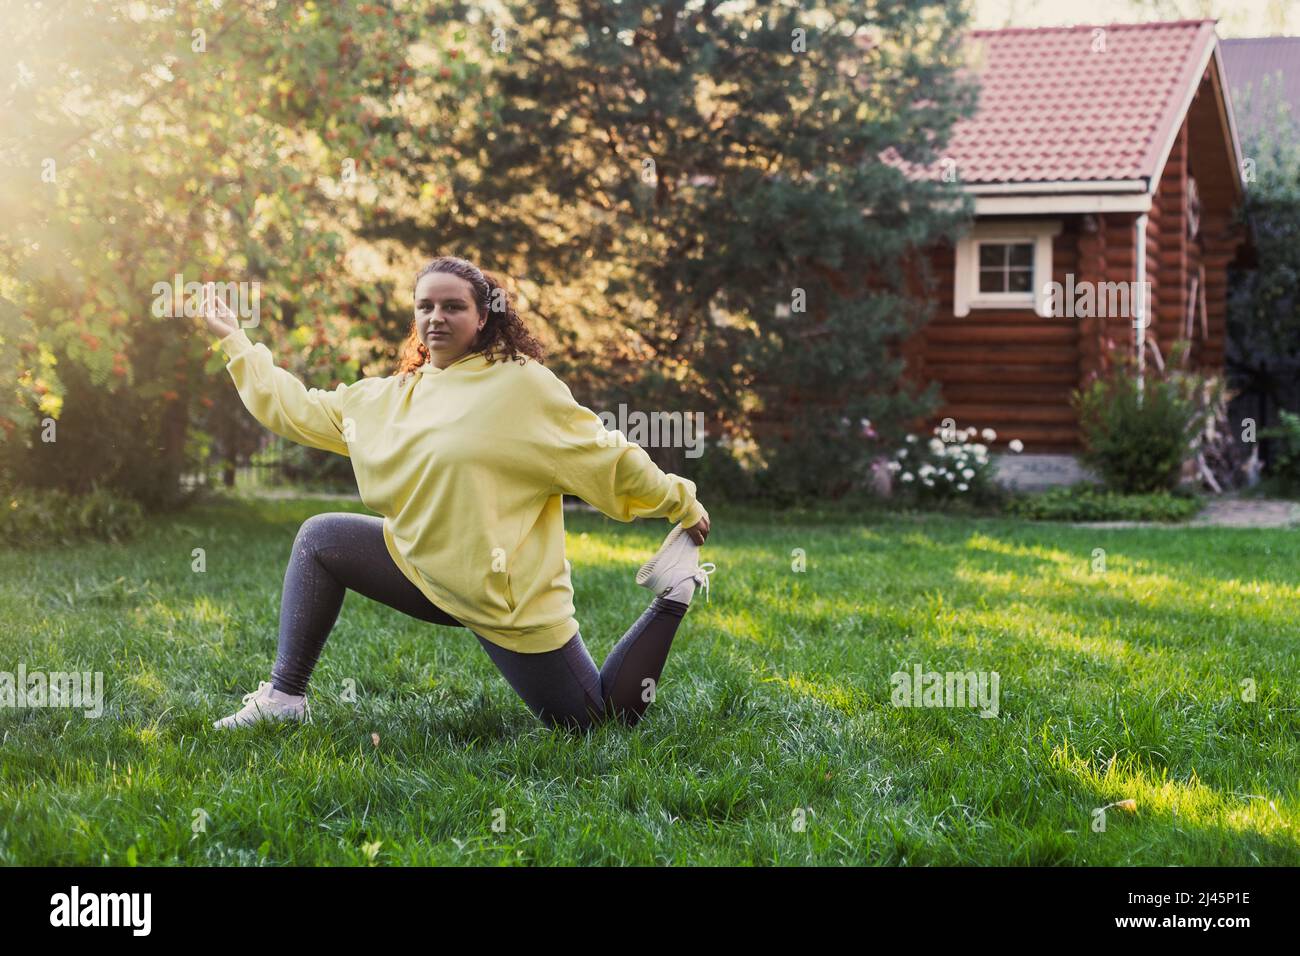 Femme d'âge moyen surpondérée faisant du yoga dans des vêtements pour le sport sur l'herbe verte dans la cour avec maison de campagne en bois et de grands arbres en arrière-plan Banque D'Images